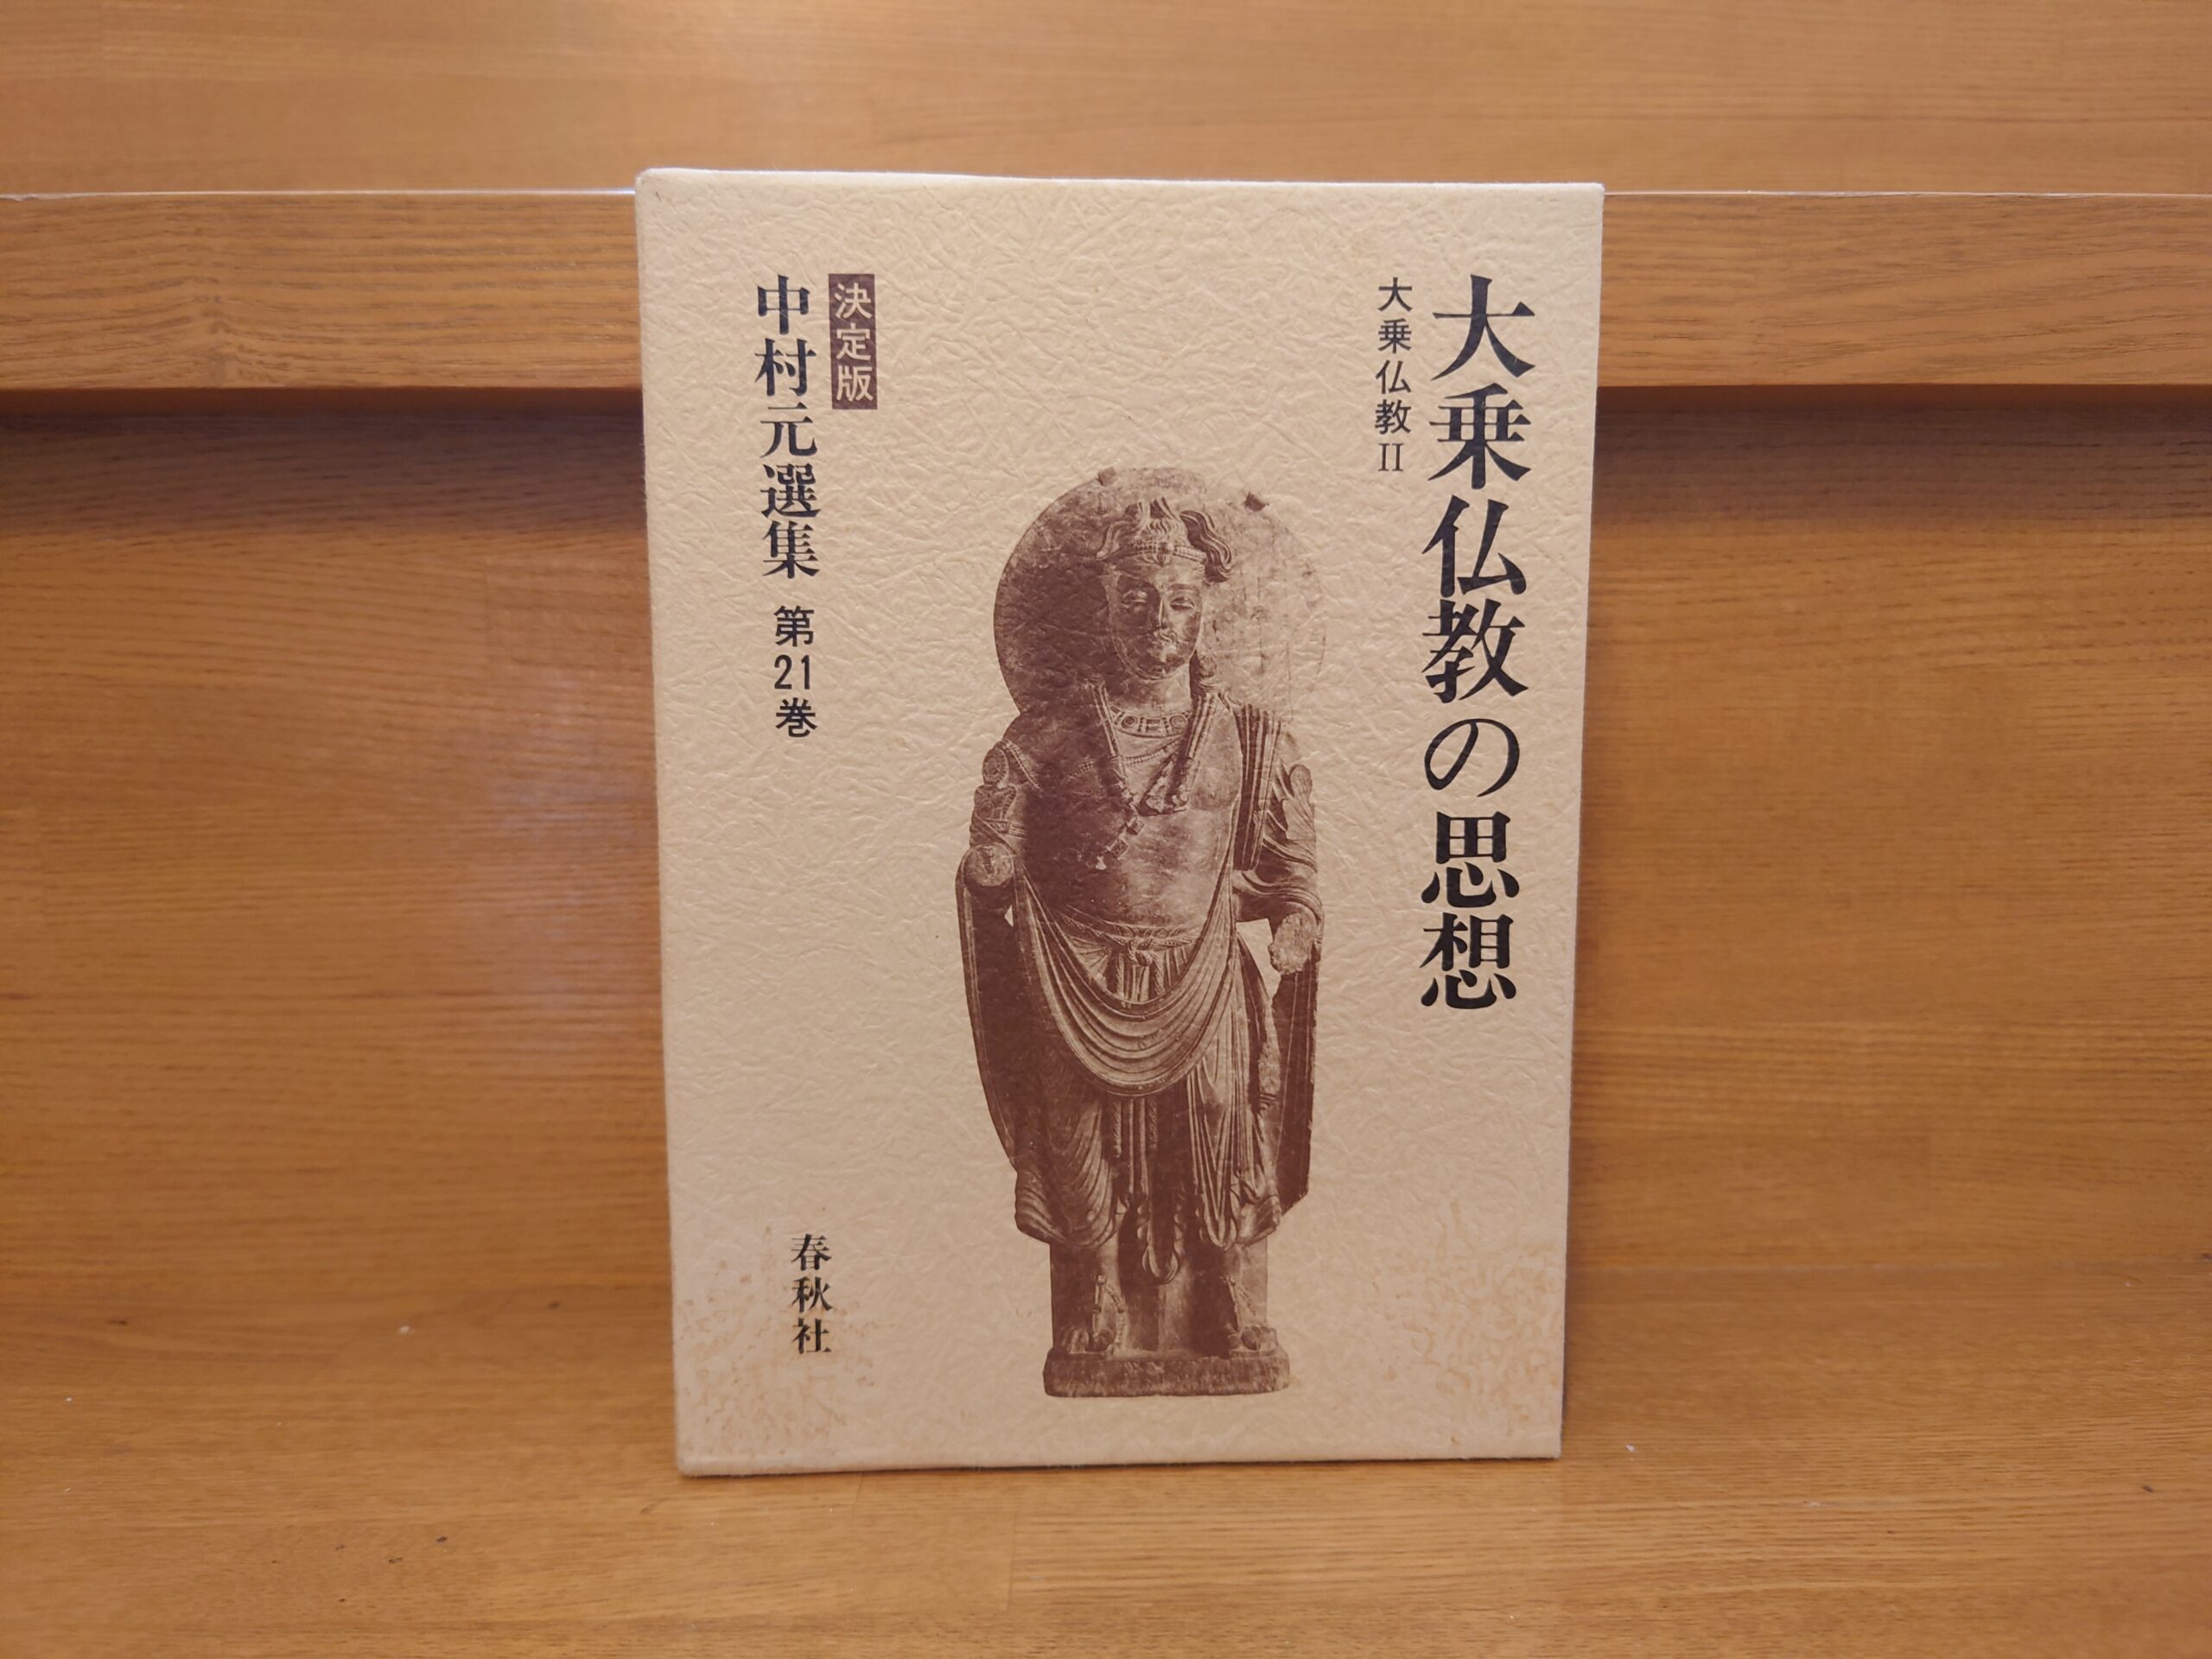 中村元選集第21巻『大乗仏教の思想』～原始仏教と初期大乗について